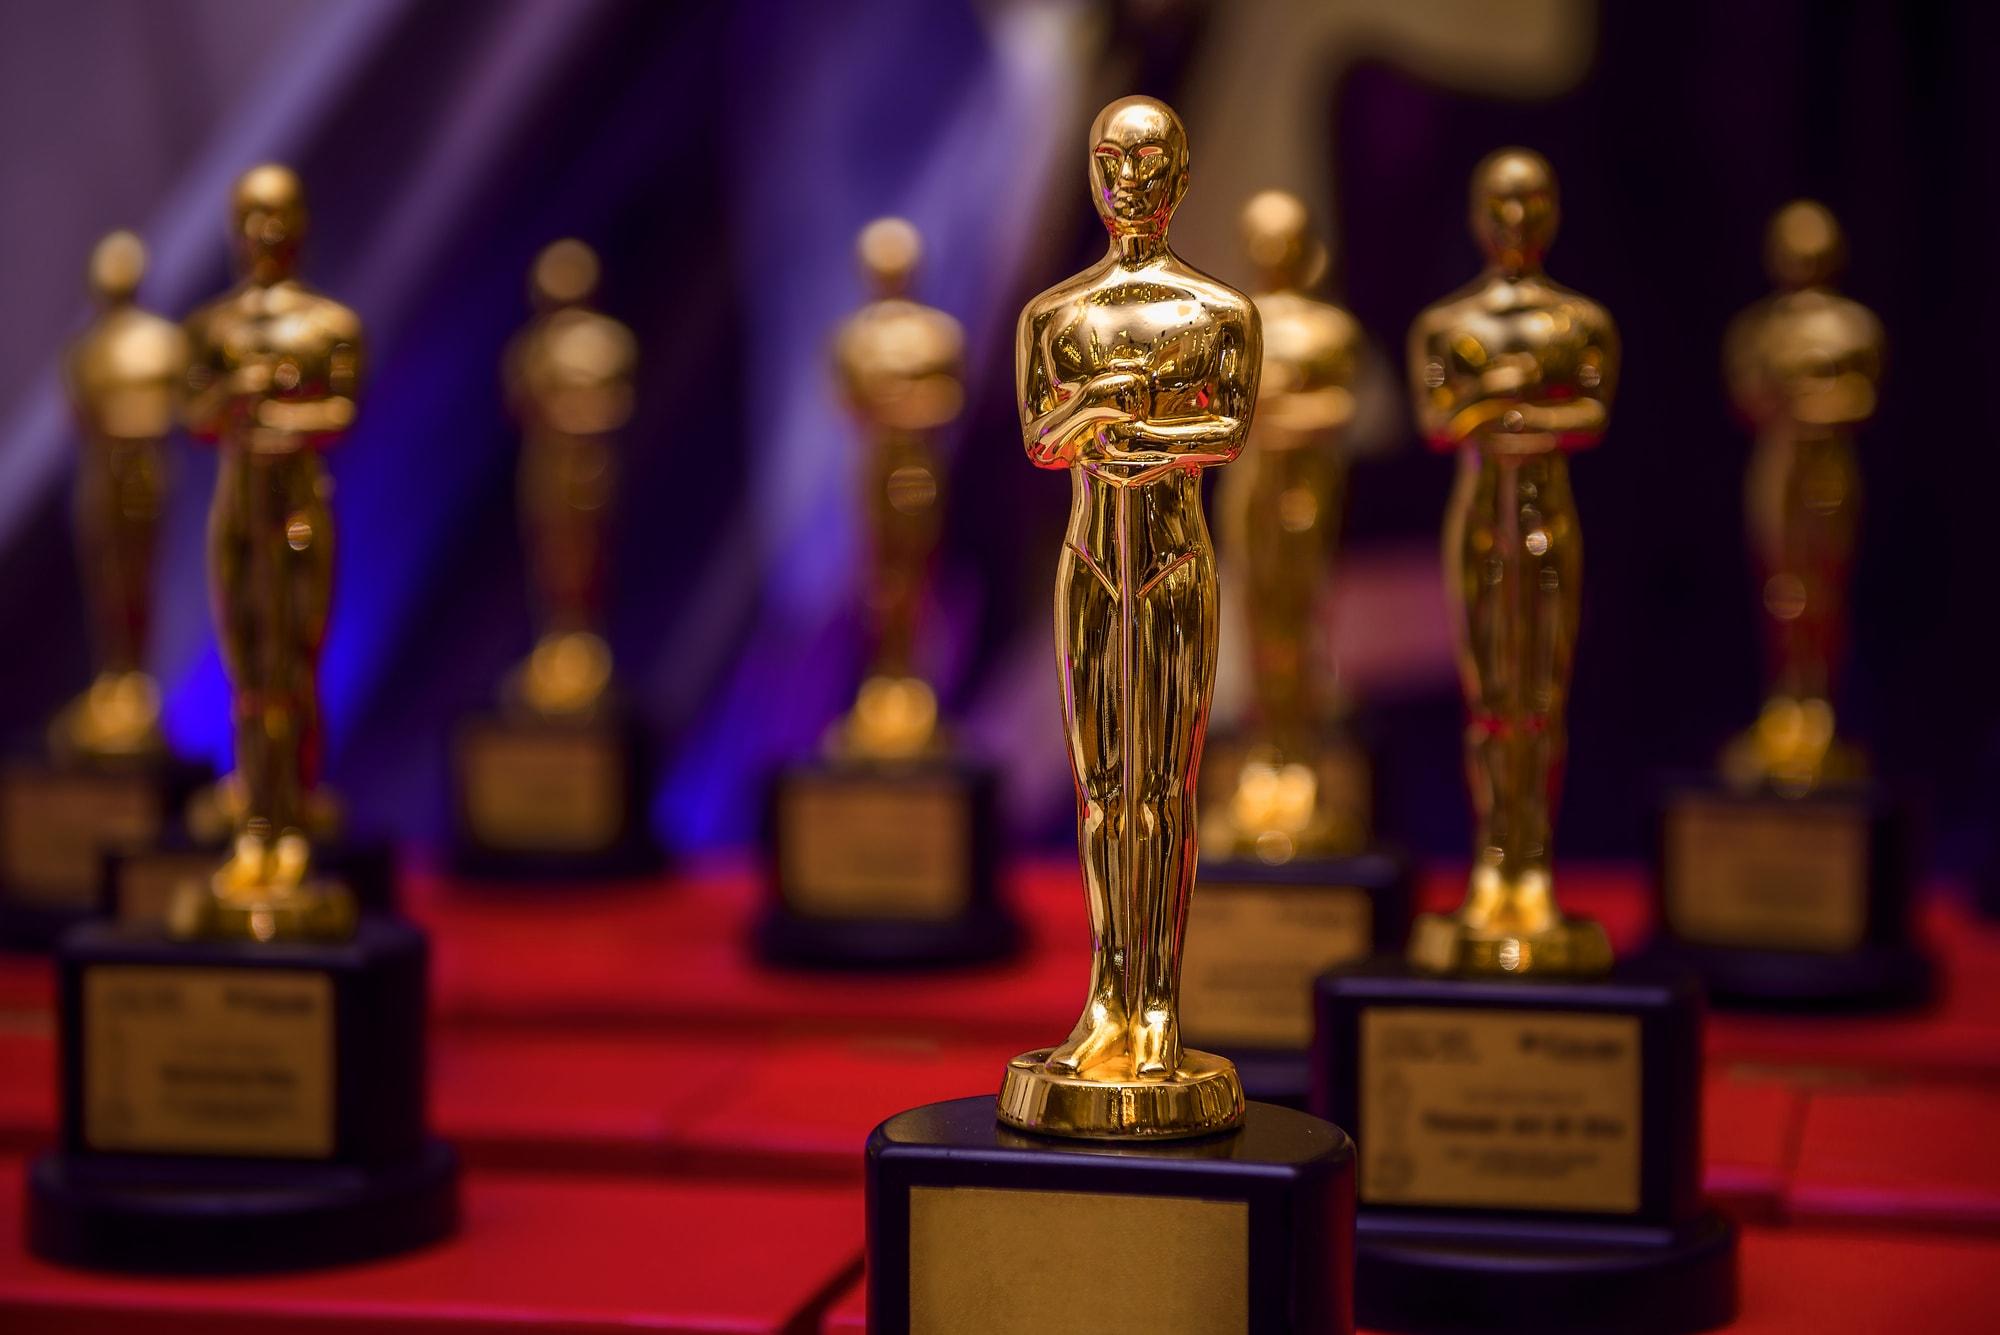 Объявлены новые правила вручения премии «Оскар» для категории «Лучший фильм»